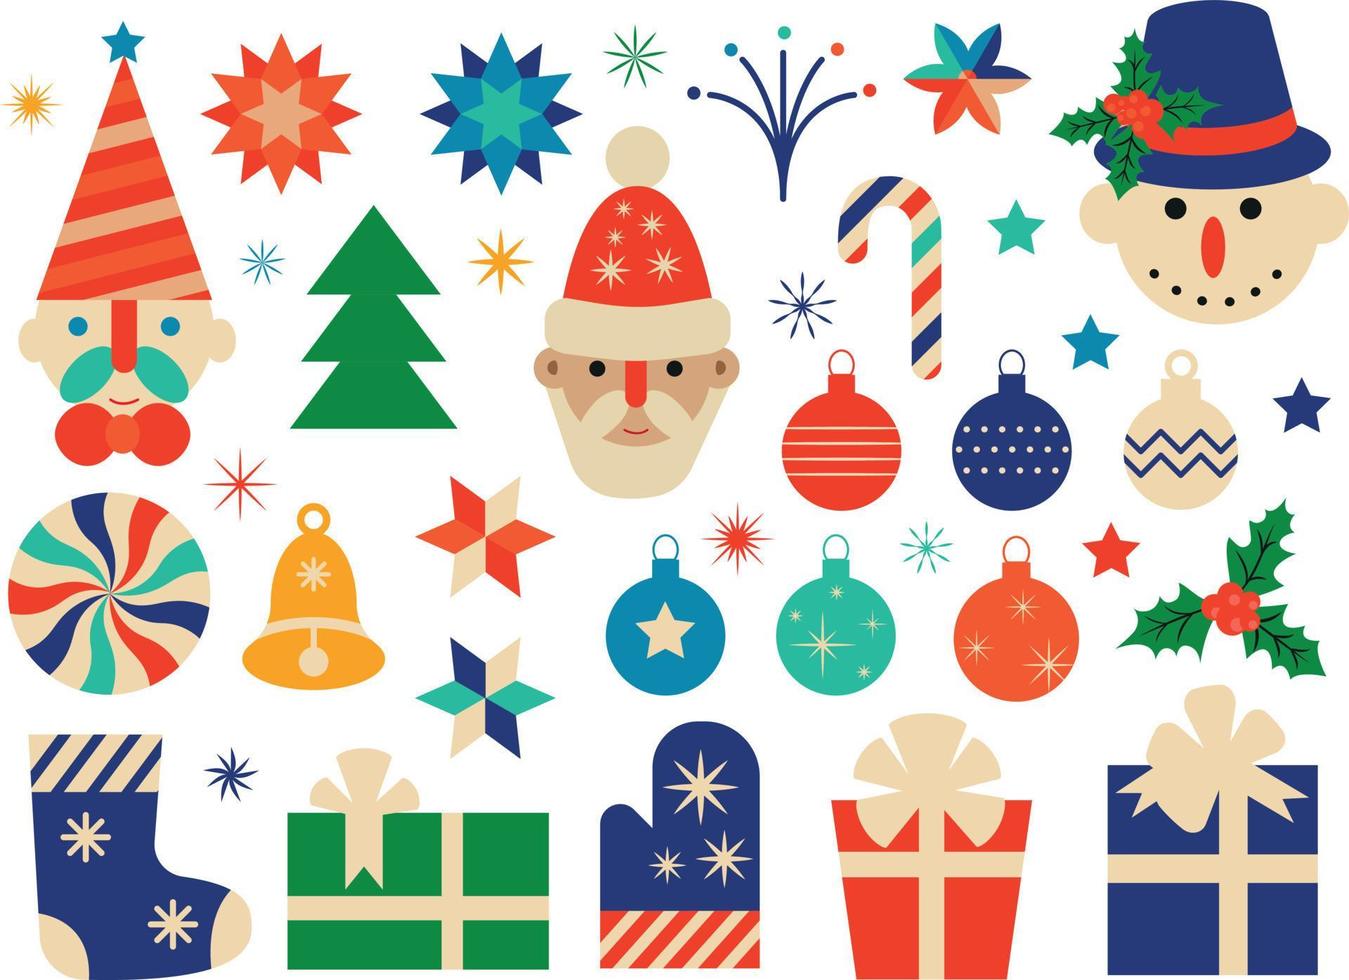 Natale vacanza decorazioni e elementi Santa claus, pupazzo di neve, Natale decorazioni. vettore piatto illustrazione